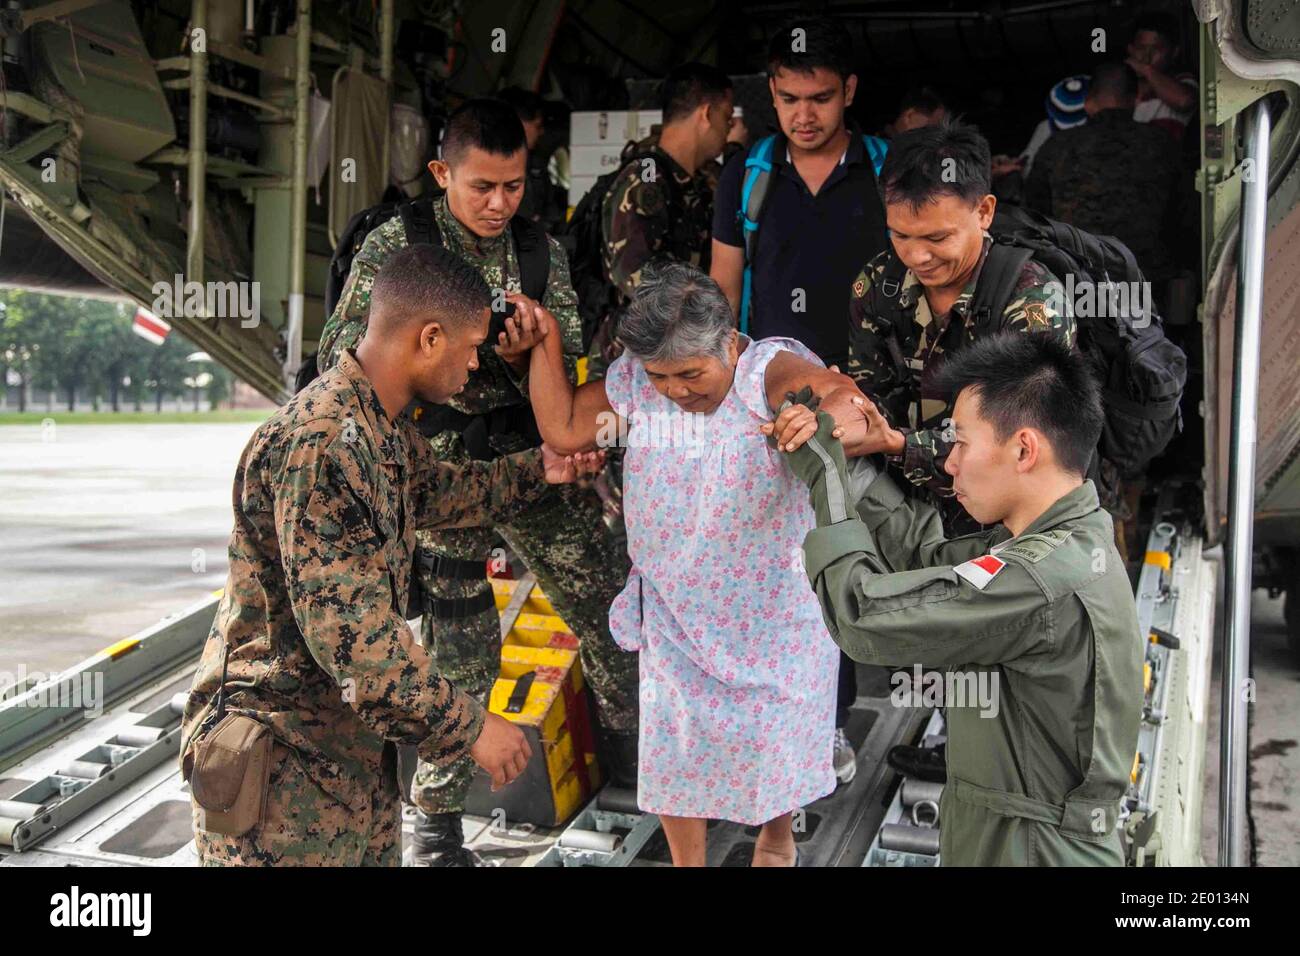 U.S. Marine Lance Cpl. Xavier L. Cannon y miembros de las Fuerzas Armadas Filipinas ayudan a civiles en un avión USMC C-130 en la base Aérea de Villamor, Filipinas, el 12 de noviembre de 2013, durante los esfuerzos de ayuda humanitaria después del tifón Haiyan. La tormenta afectó a más de 4.2 millones de personas en 36 provincias de Filipinas, según el Consejo Nacional de reducción y Gestión del riesgo de Desastres del gobierno filipino. Los Marines están con la 3ª Brigada Expedicionaria Marina, III Fuerza Expedicionaria Marina. Foto de USMC vía ABACAPRESS.COM Foto de stock